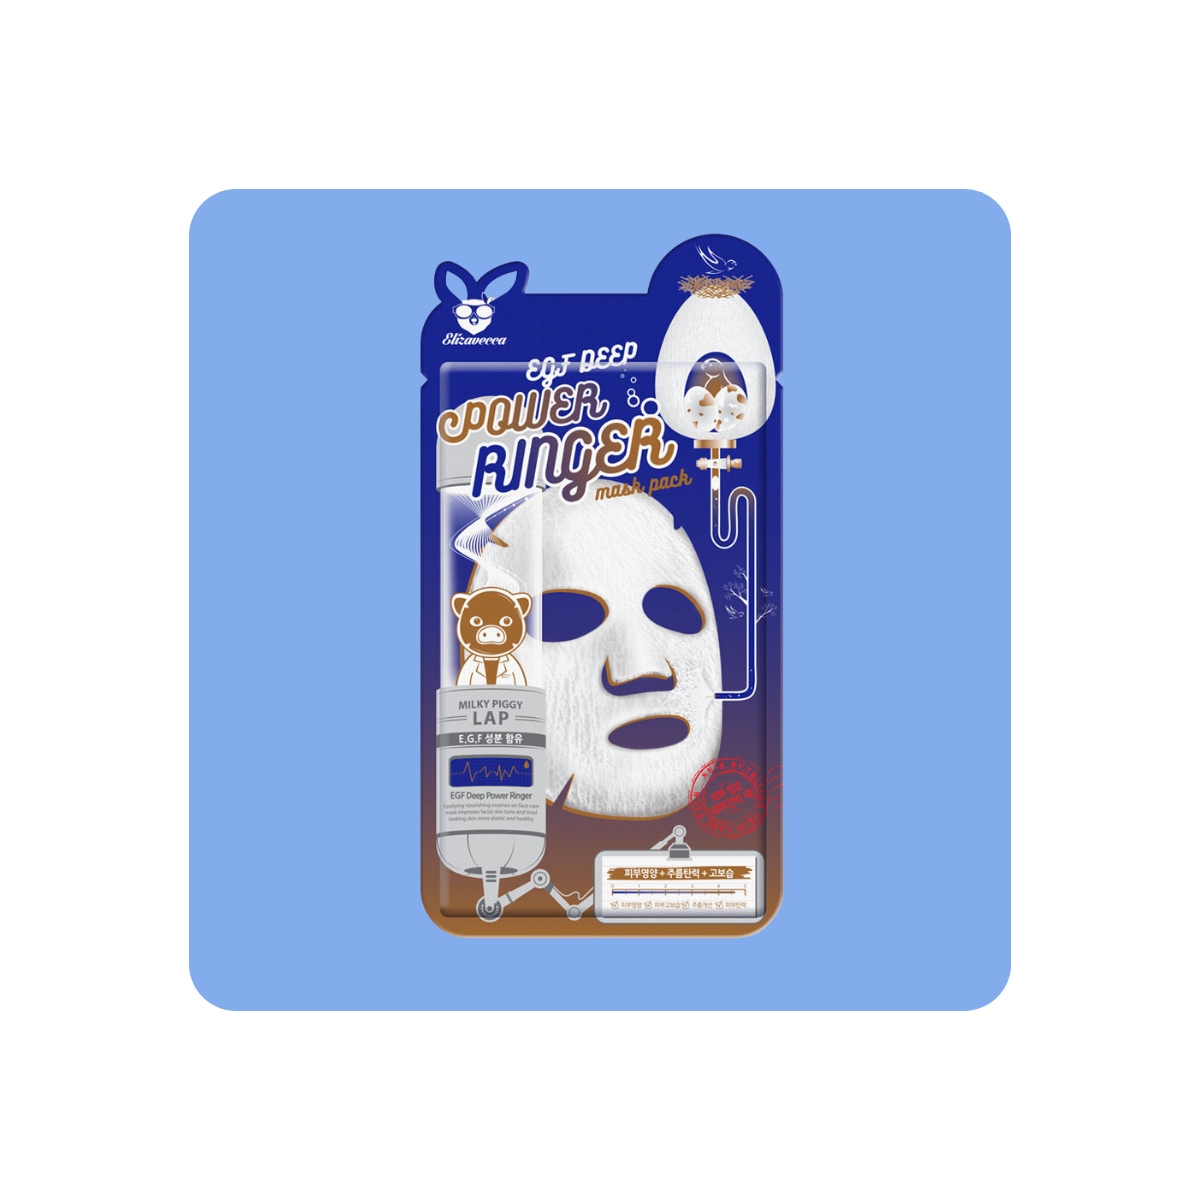 Mascarillas Coreanas de Hoja al mejor precio: Elizavecca EGF Deep Power Ringer Mask Pack Mascarilla coreana reafirmante de Elizavecca en Skin Thinks - Piel Sensible